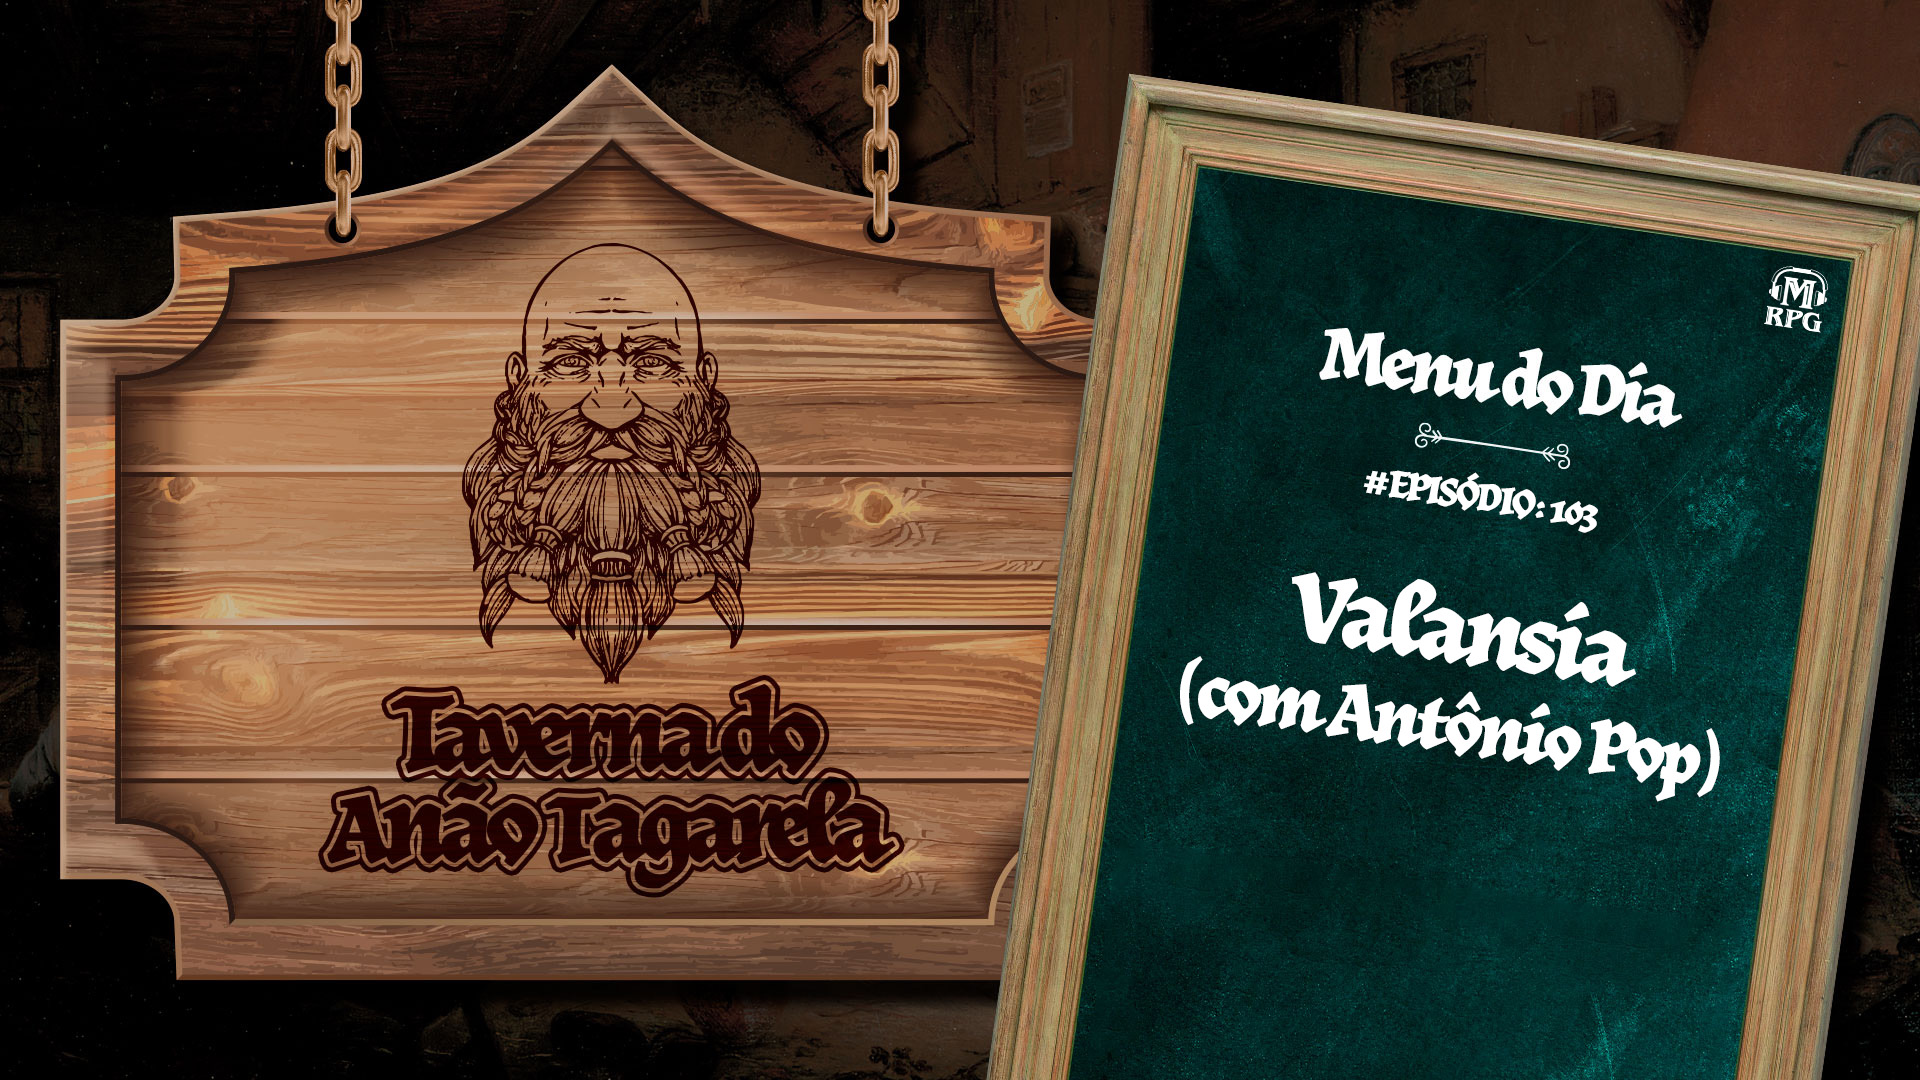 Valansia - Taverna do Anão Tagarela #103